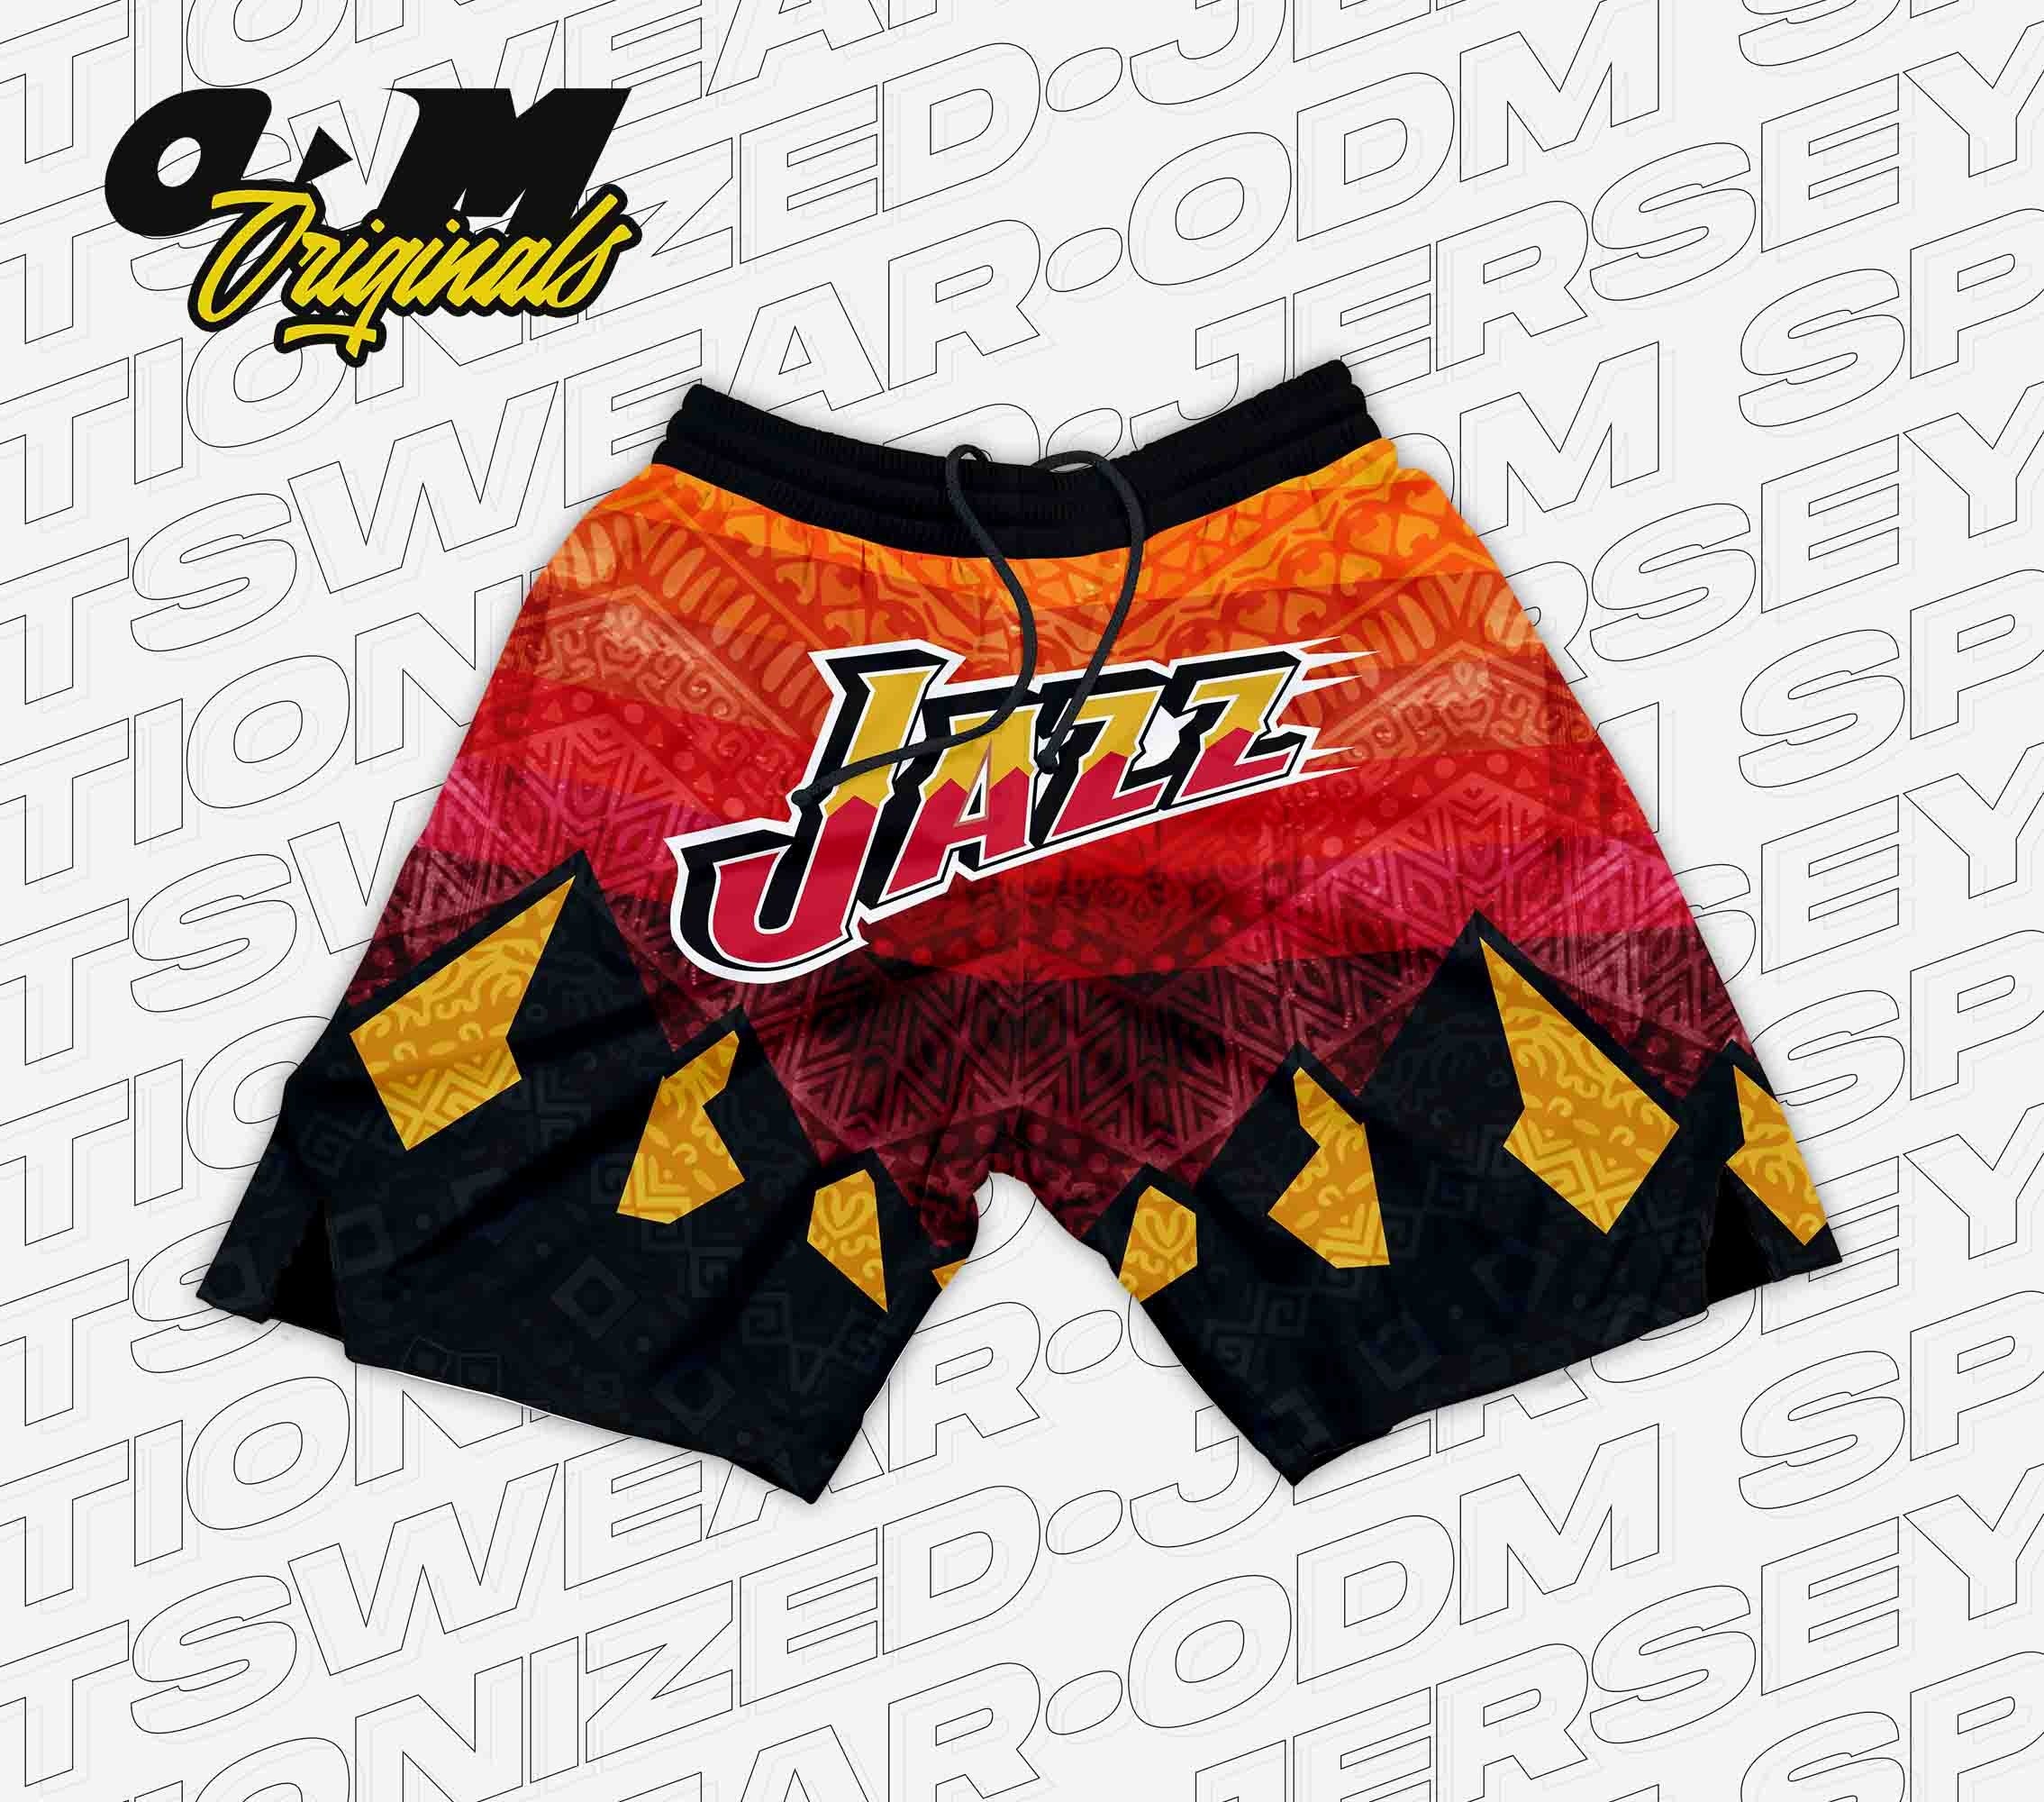 UTAH JAZZ x ODM Concept Retro Shorts